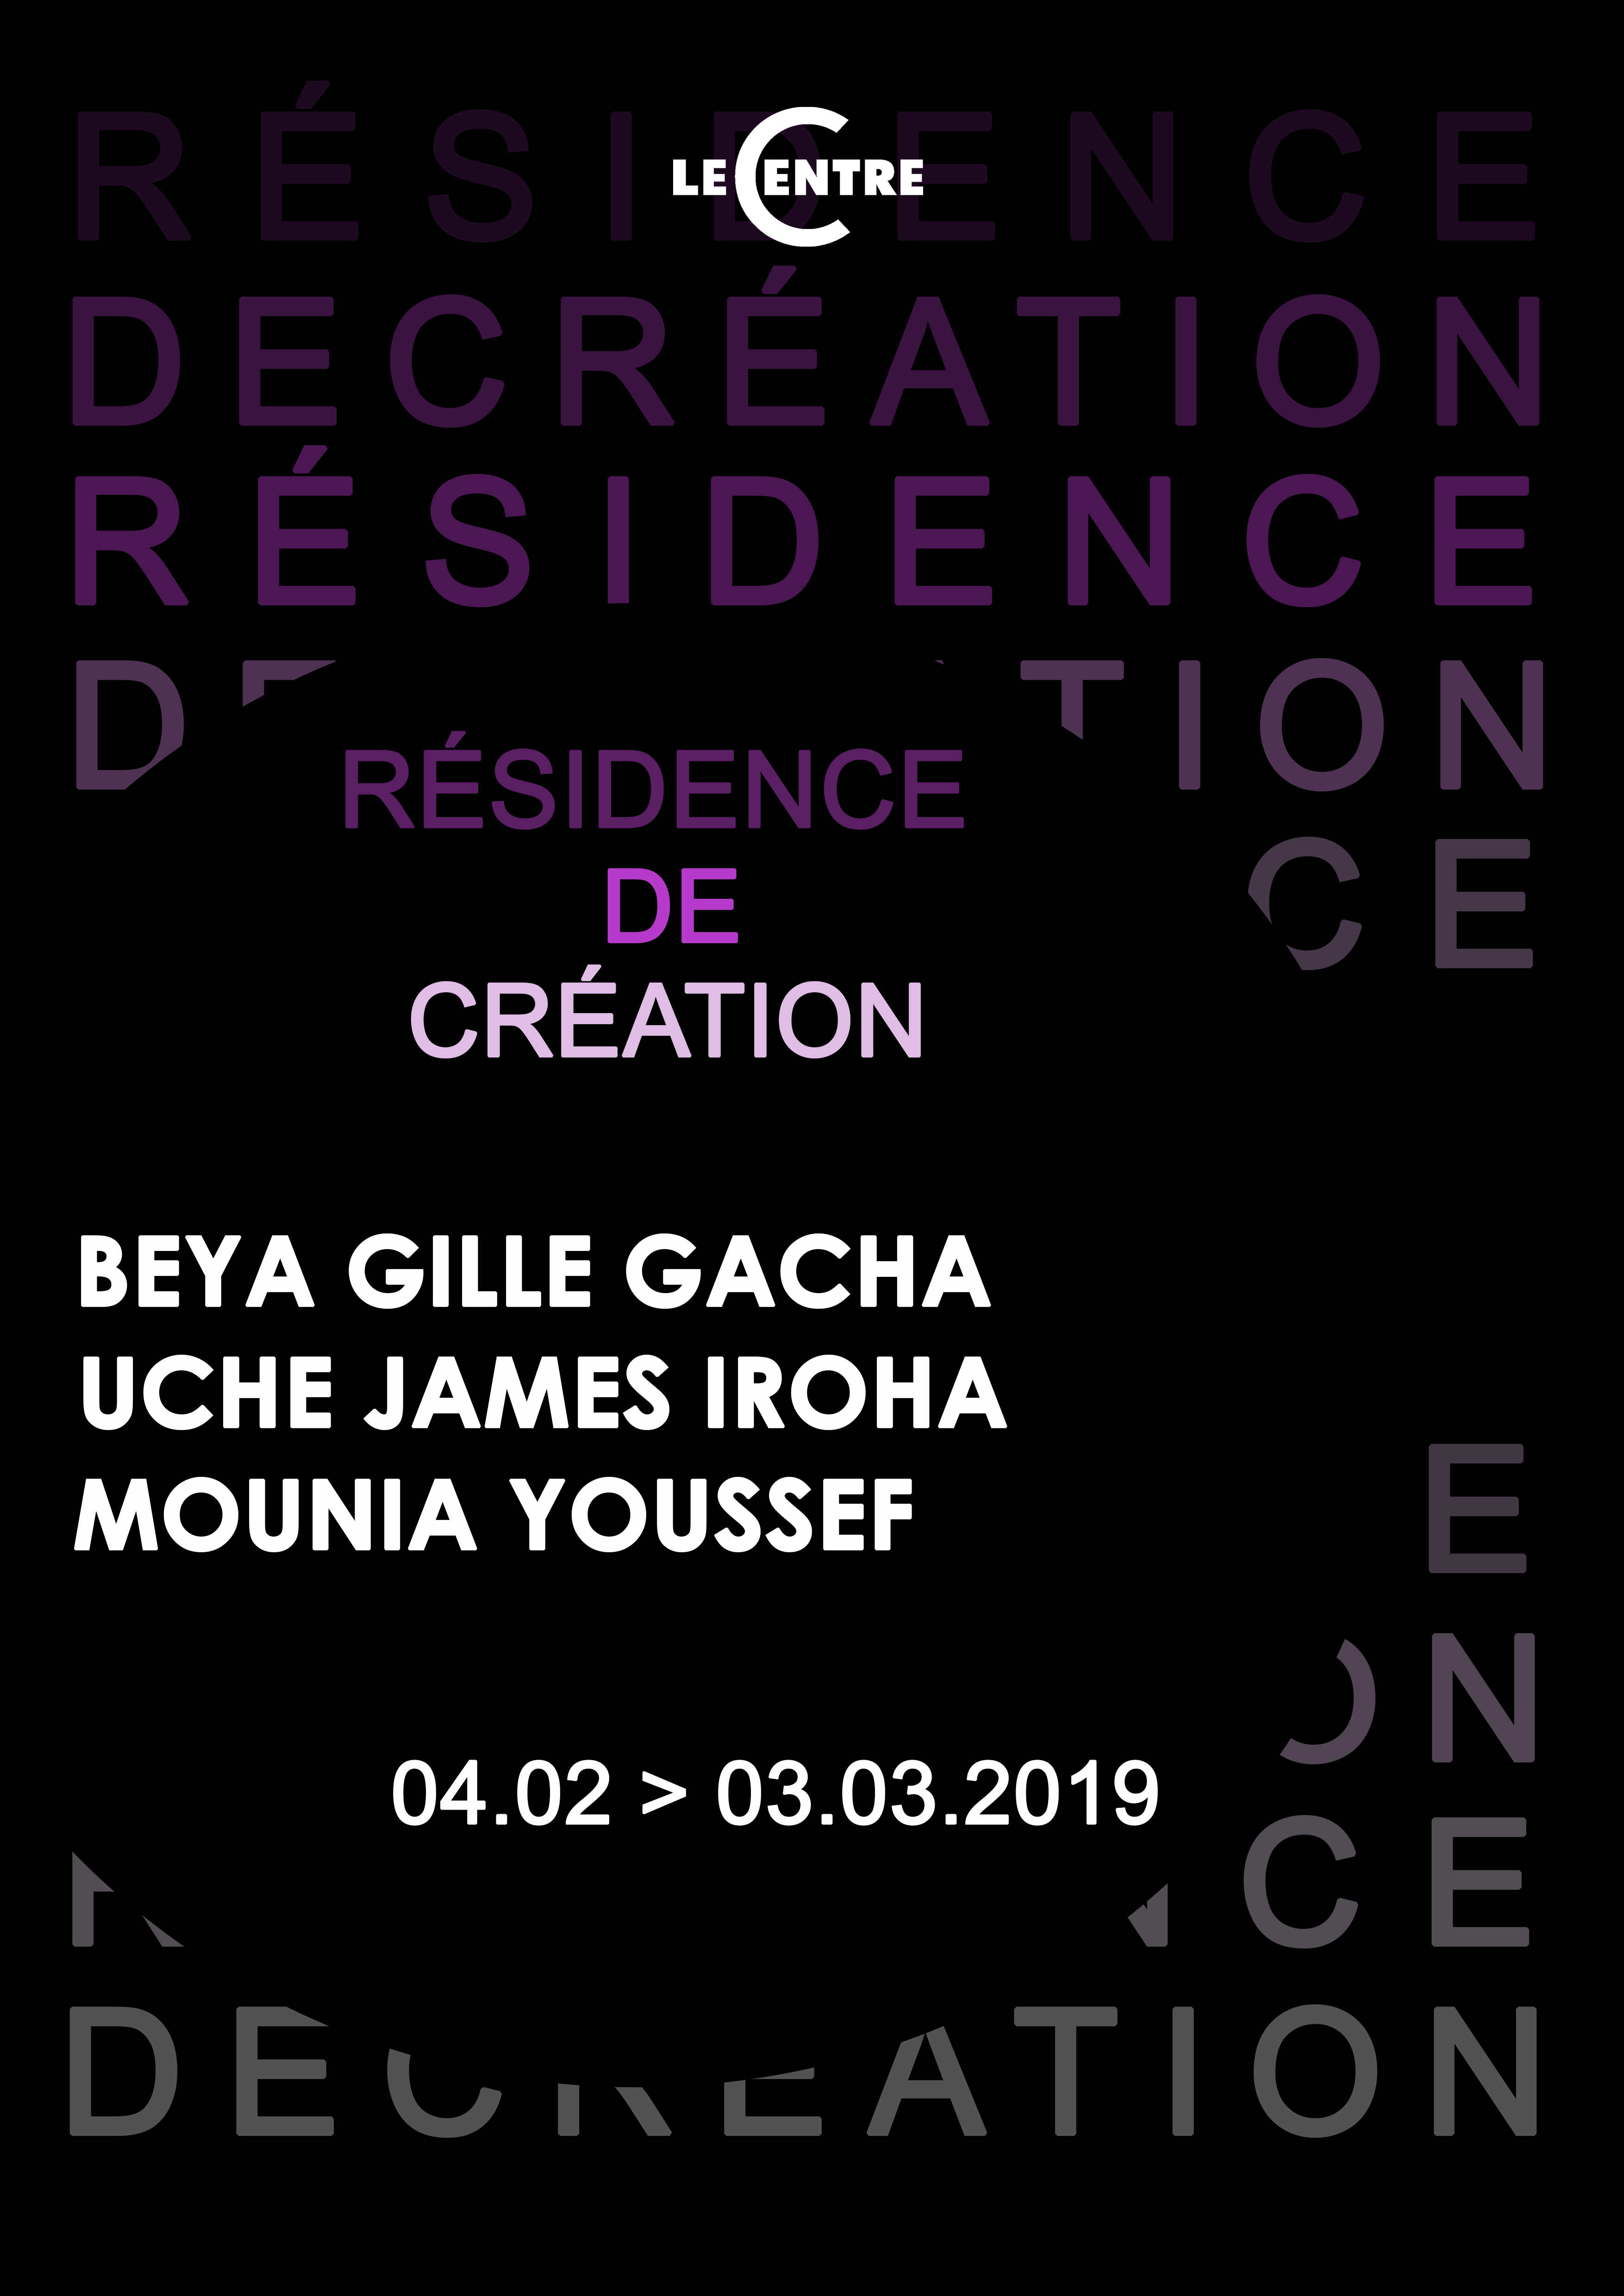 Beya Gille Gacha, Uche James Iroha & Mounia Youssef